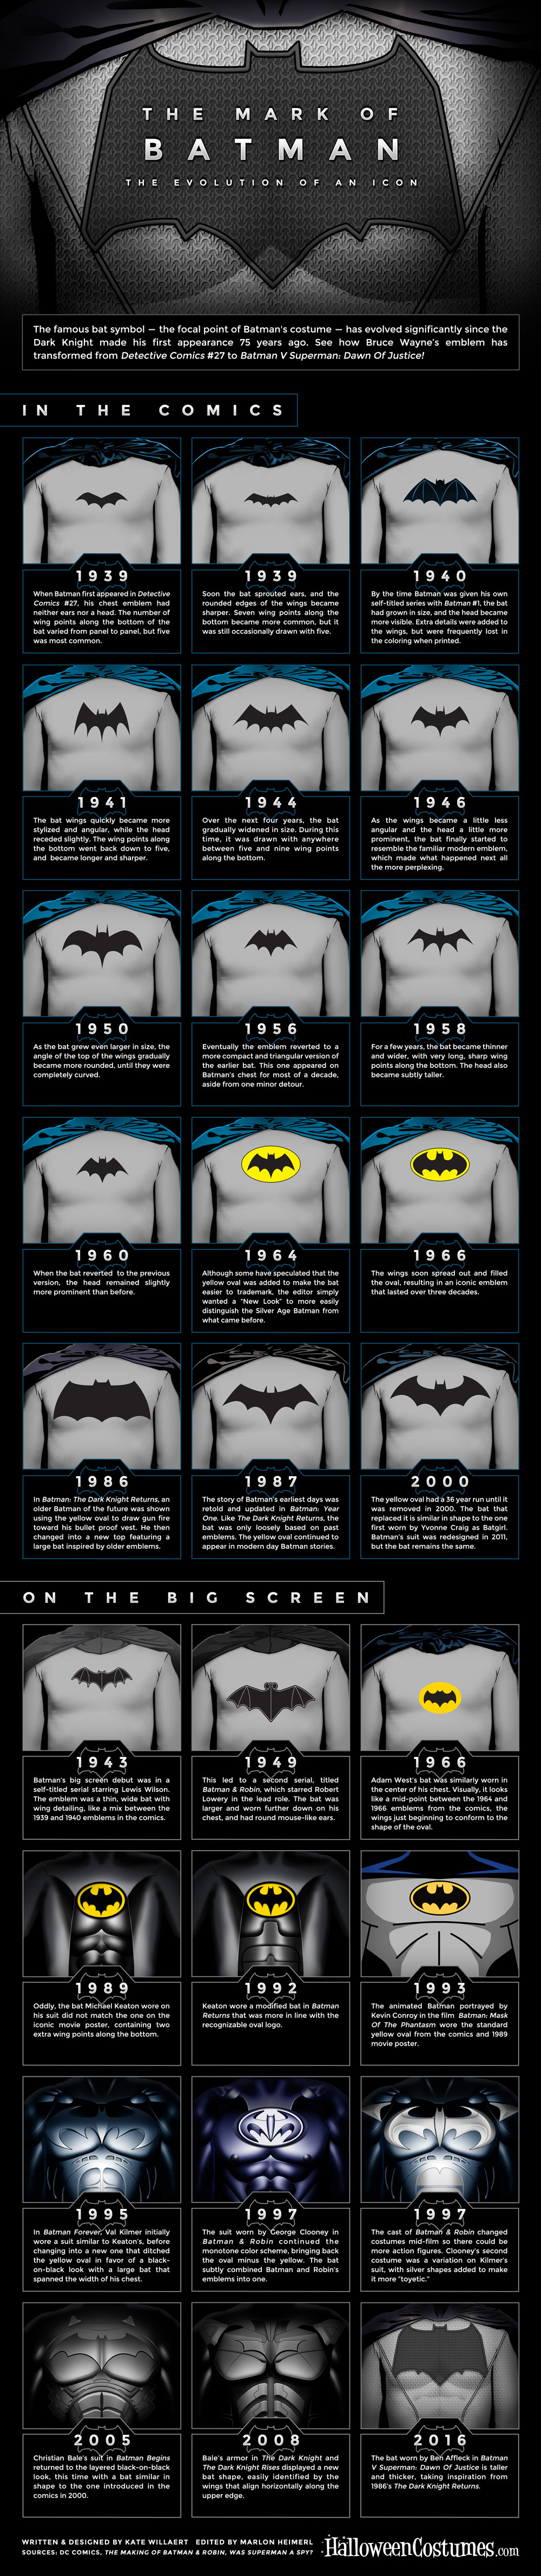 Batman-Infographic-FULL.jpg